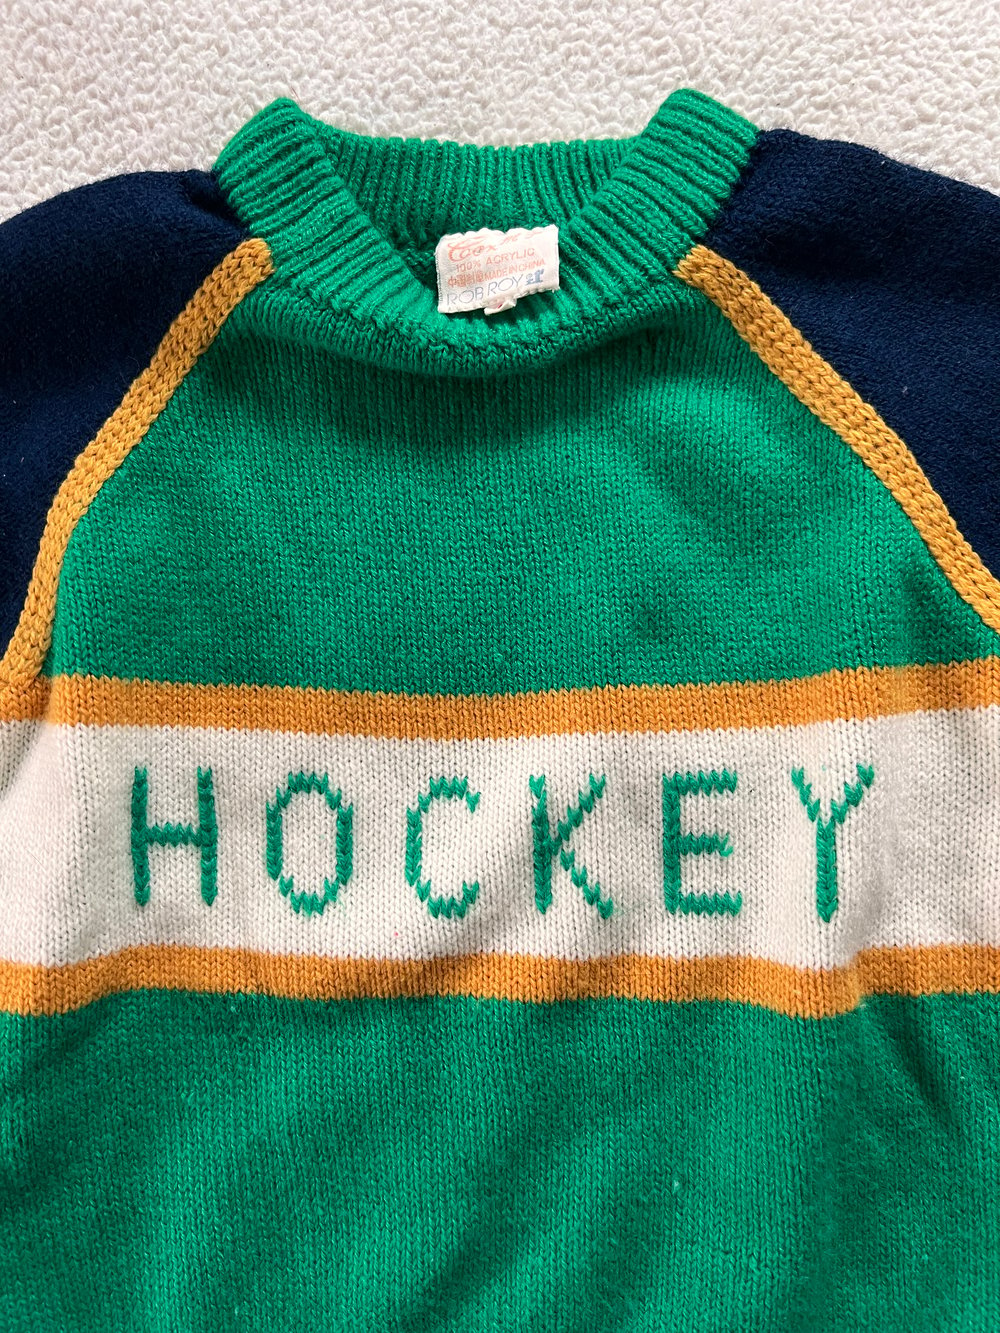 Vintage Kid’s Hockey Sweater